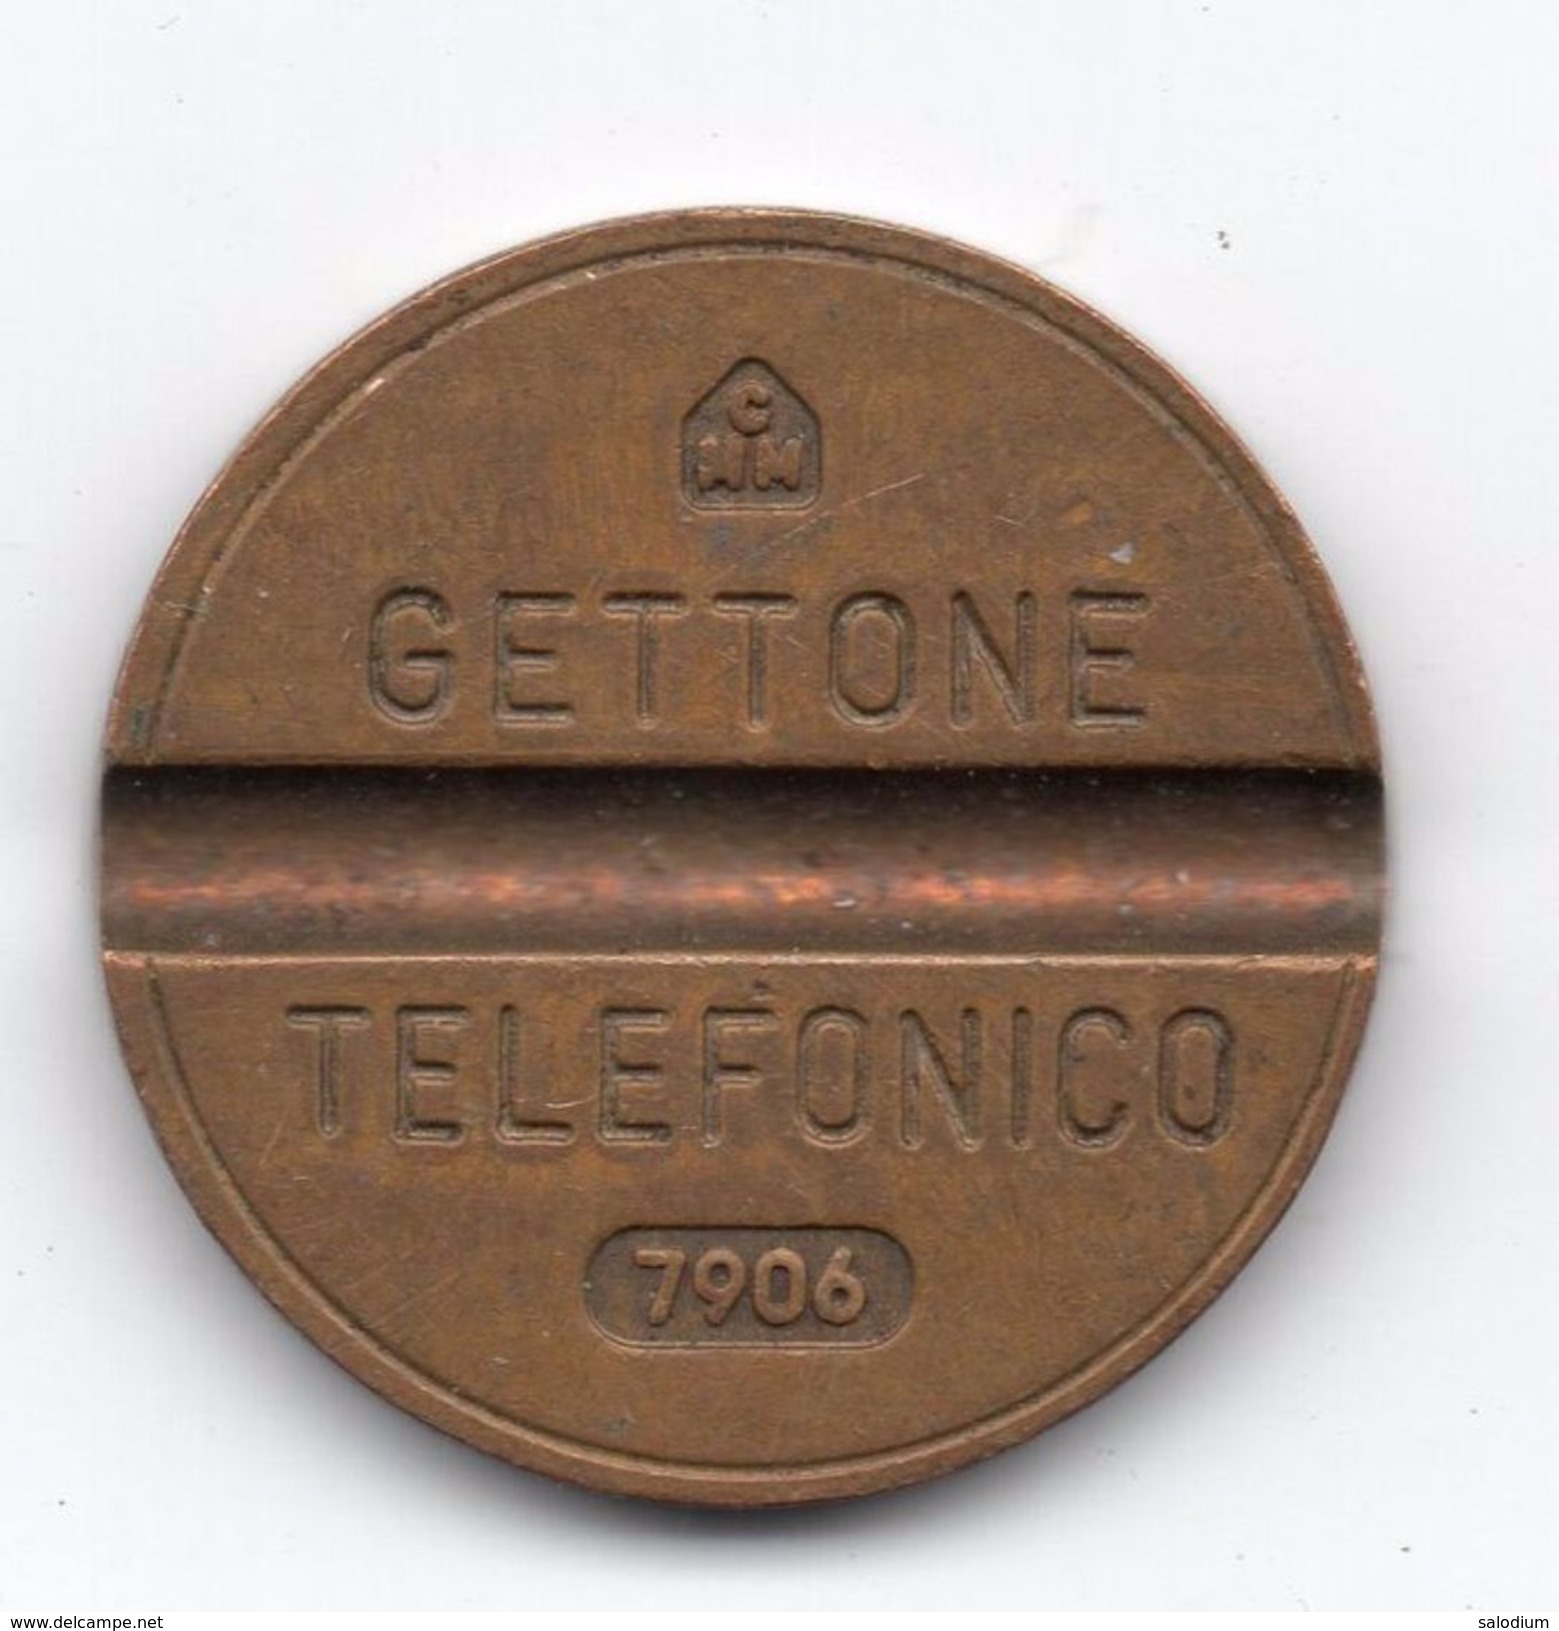 Gettone Telefonico 7609 Token Telephone - (Id-856) - Professionali/Di Società